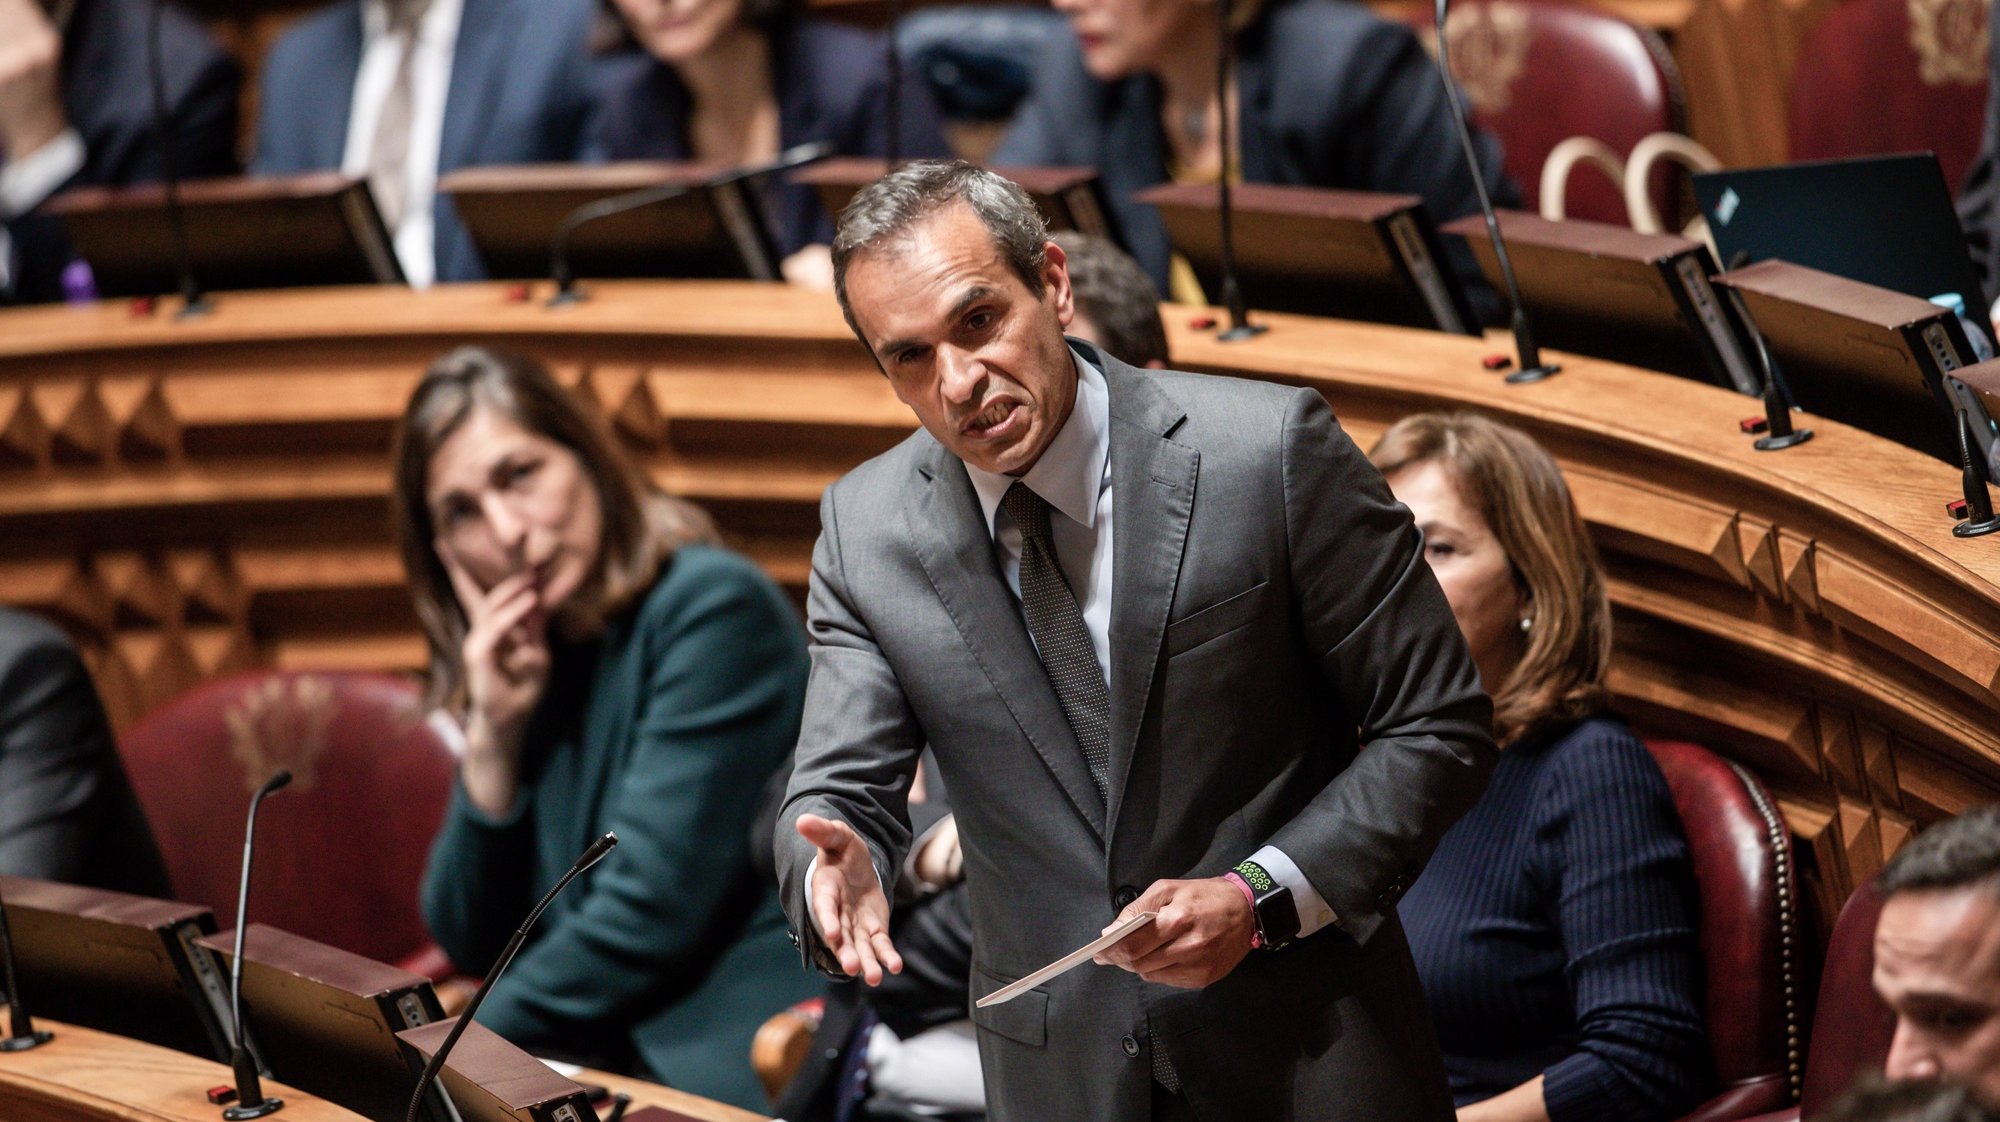 O deputado do Partido Socialista (PS), Carlos Pereira, usa da palavra durante o debate quinzenal na Assembleia da República, em Lisboa, 04 de março de 2020. JOSÉ SENA GOULÃO/LUSA